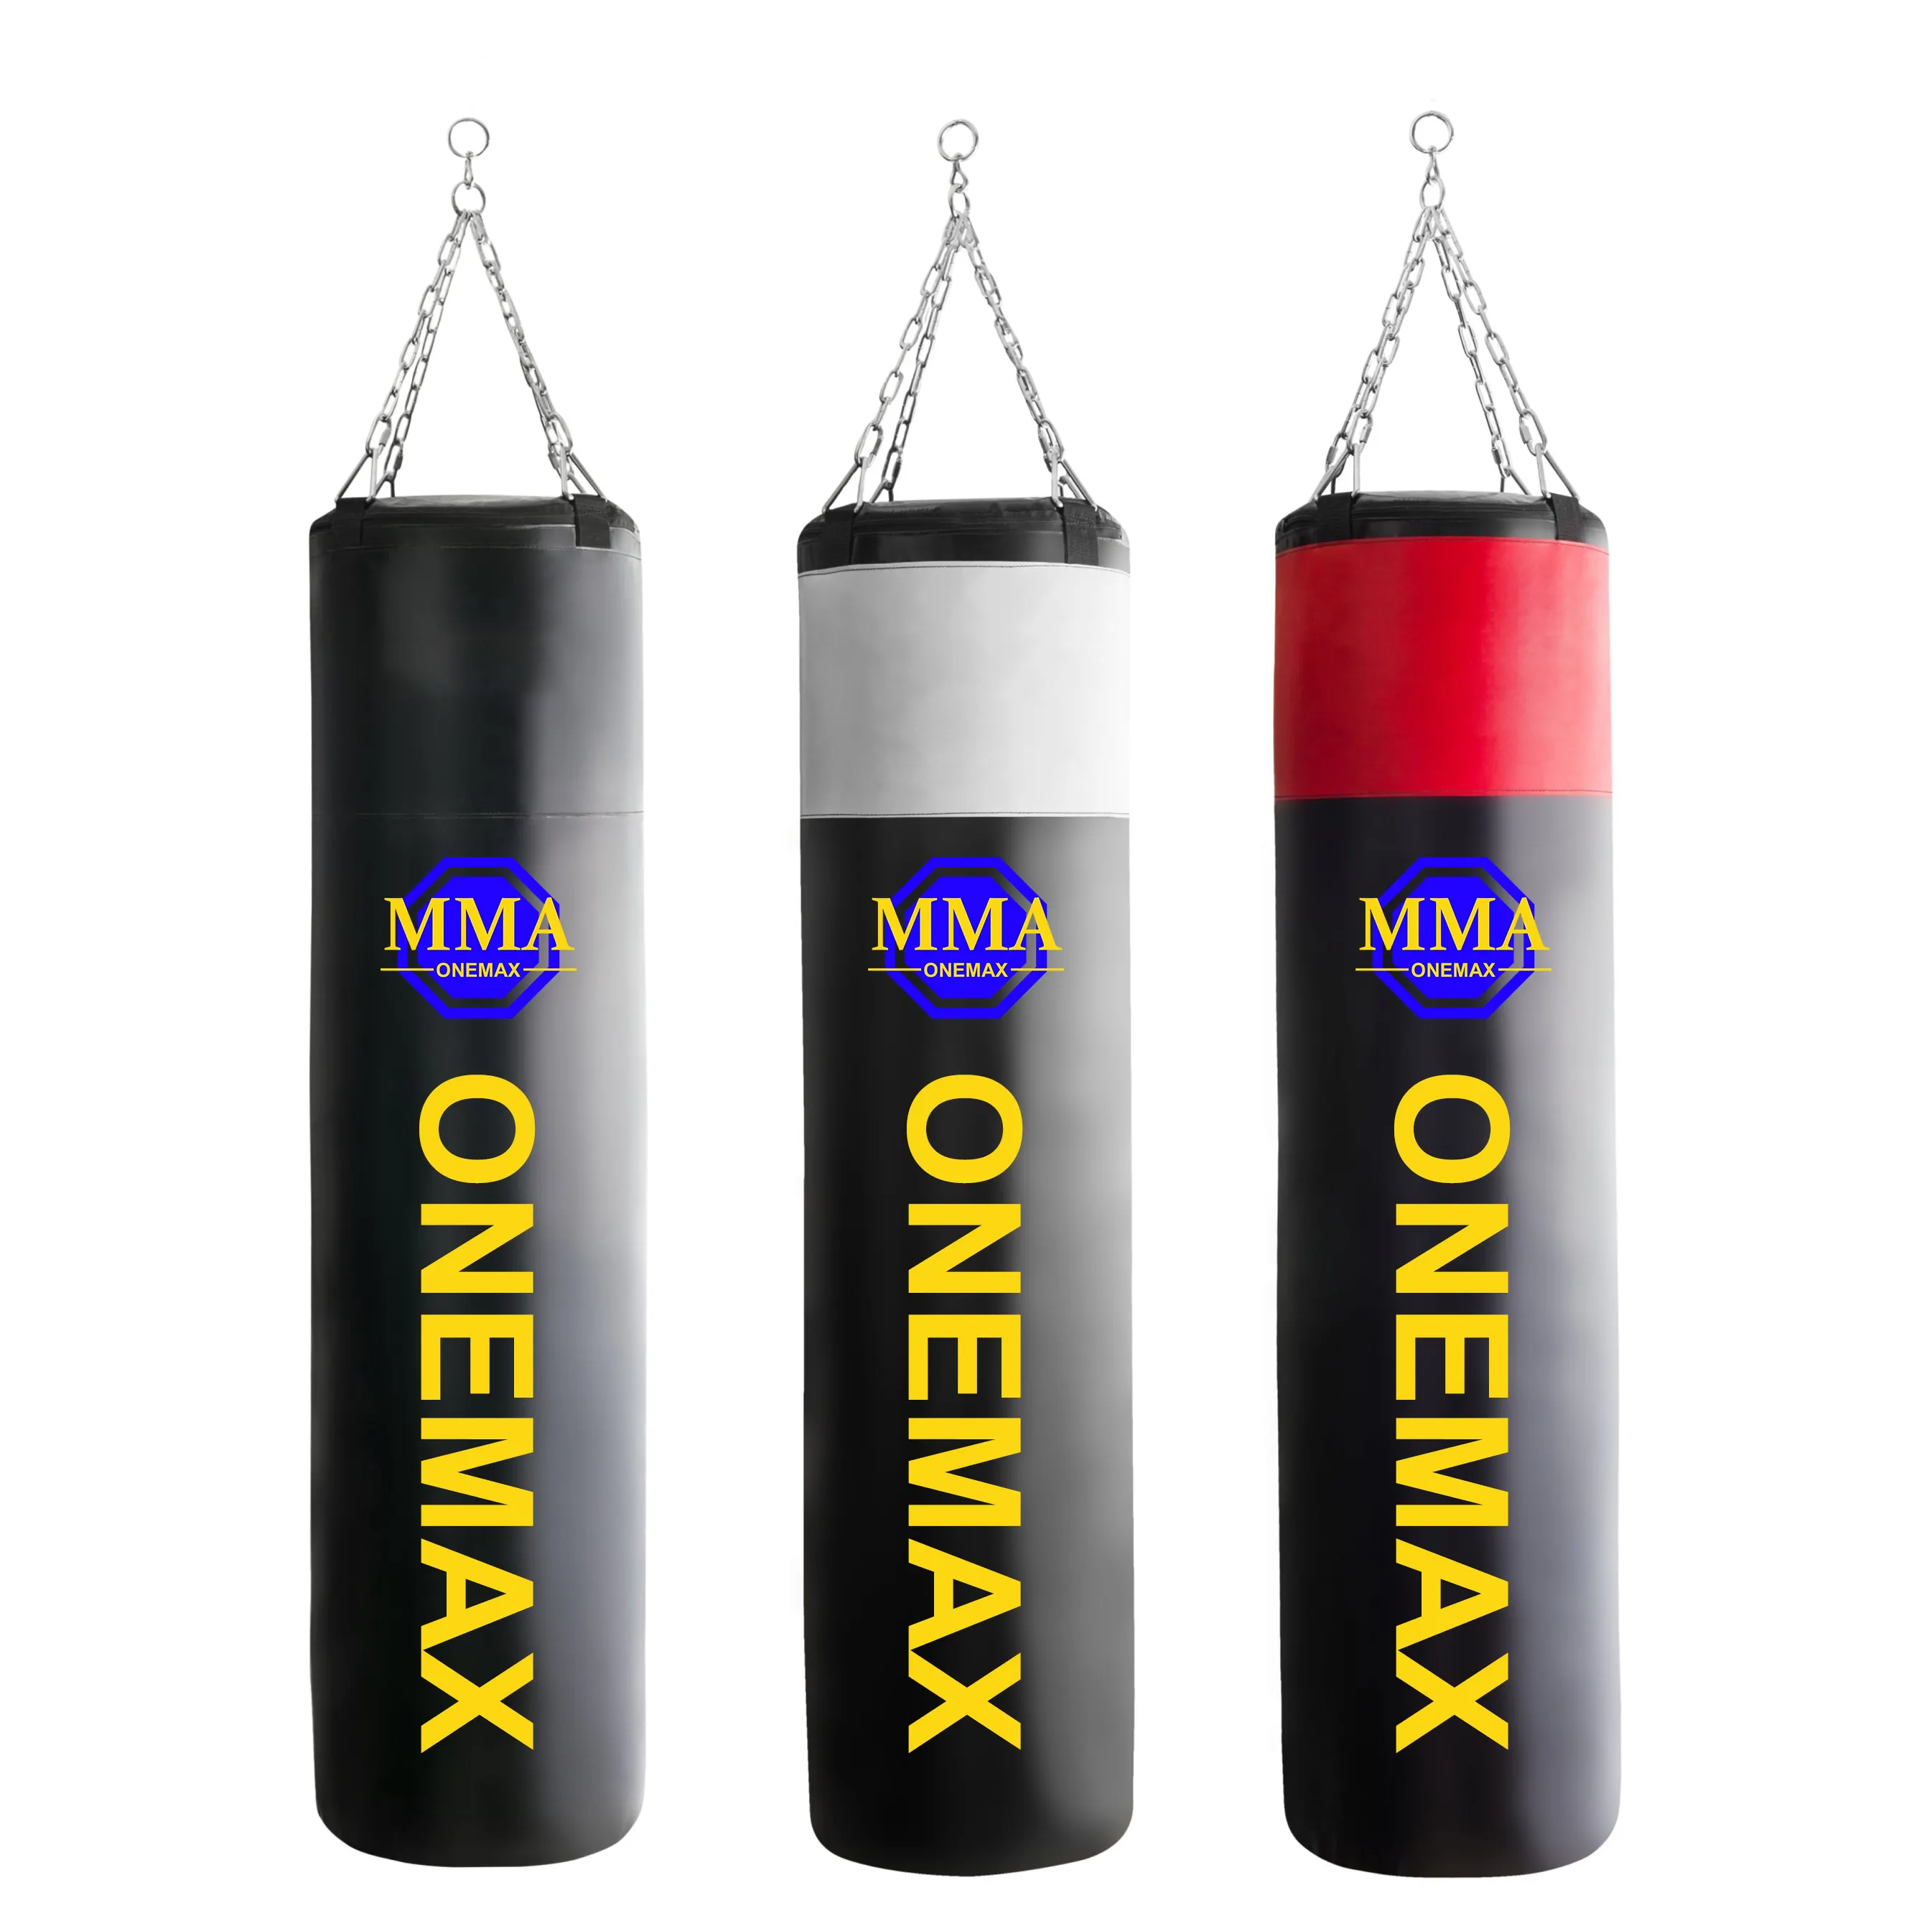 MMA ONEMAX Ausgezeichnete Qualität Sparring Boxsack 360-Grad-Rotation für Kickboxen Taekwando Boxen